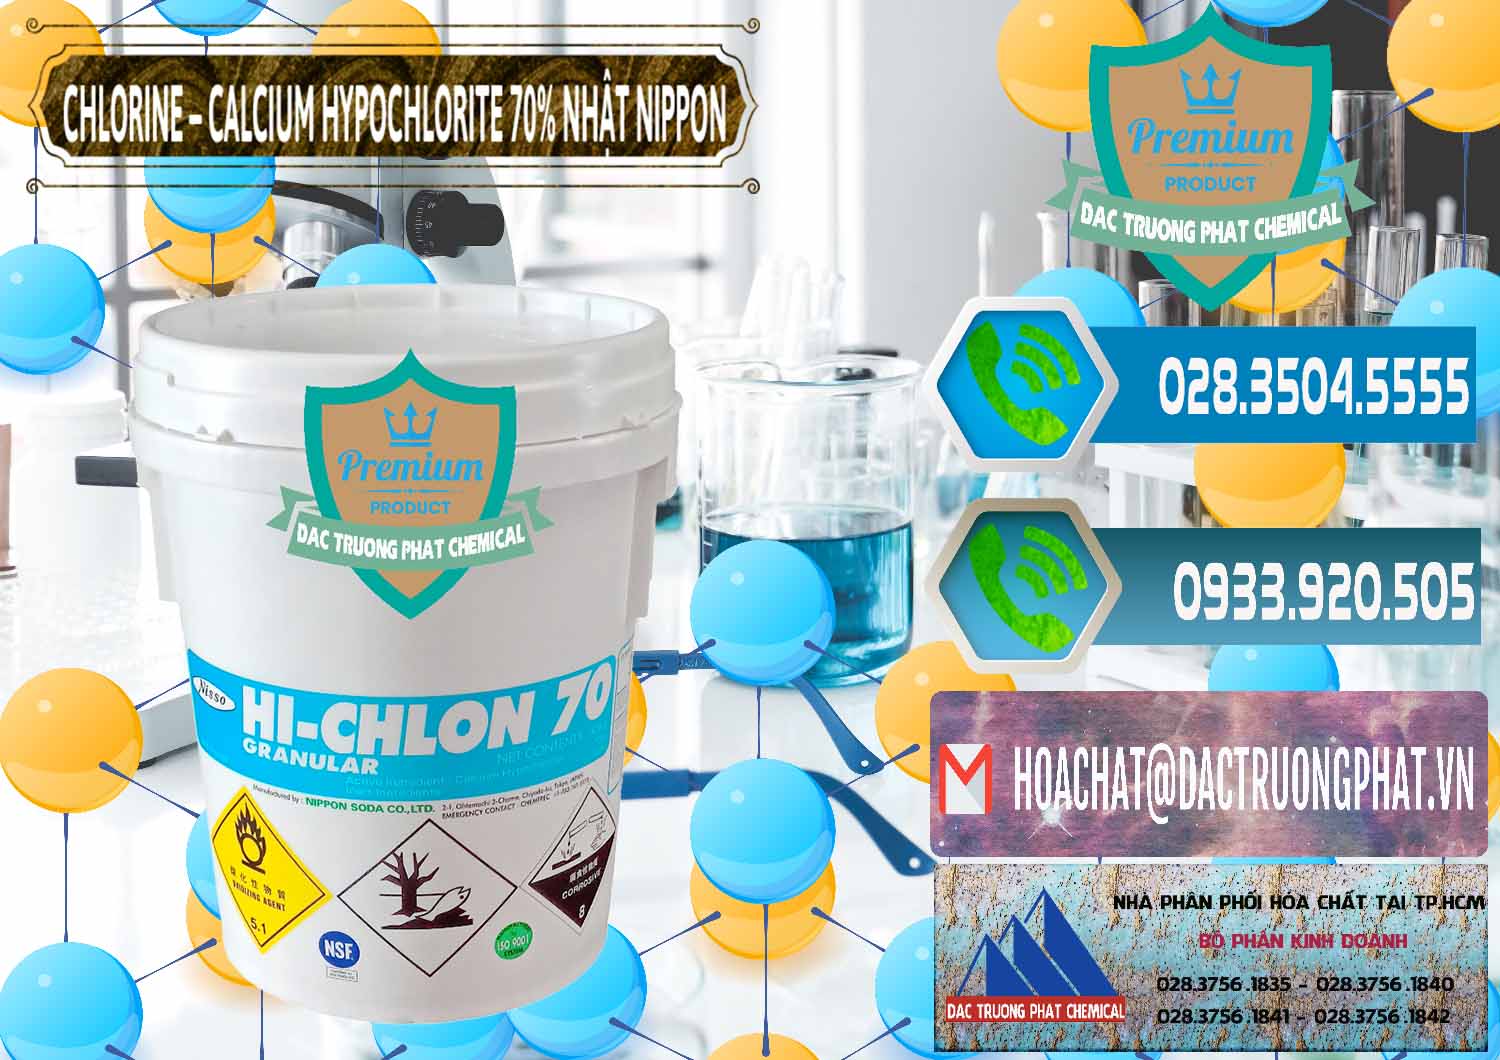 Công ty chuyên bán - cung ứng Clorin – Chlorine 70% Nippon Soda Nhật Bản Japan - 0055 - Công ty cung cấp & phân phối hóa chất tại TP.HCM - congtyhoachat.net